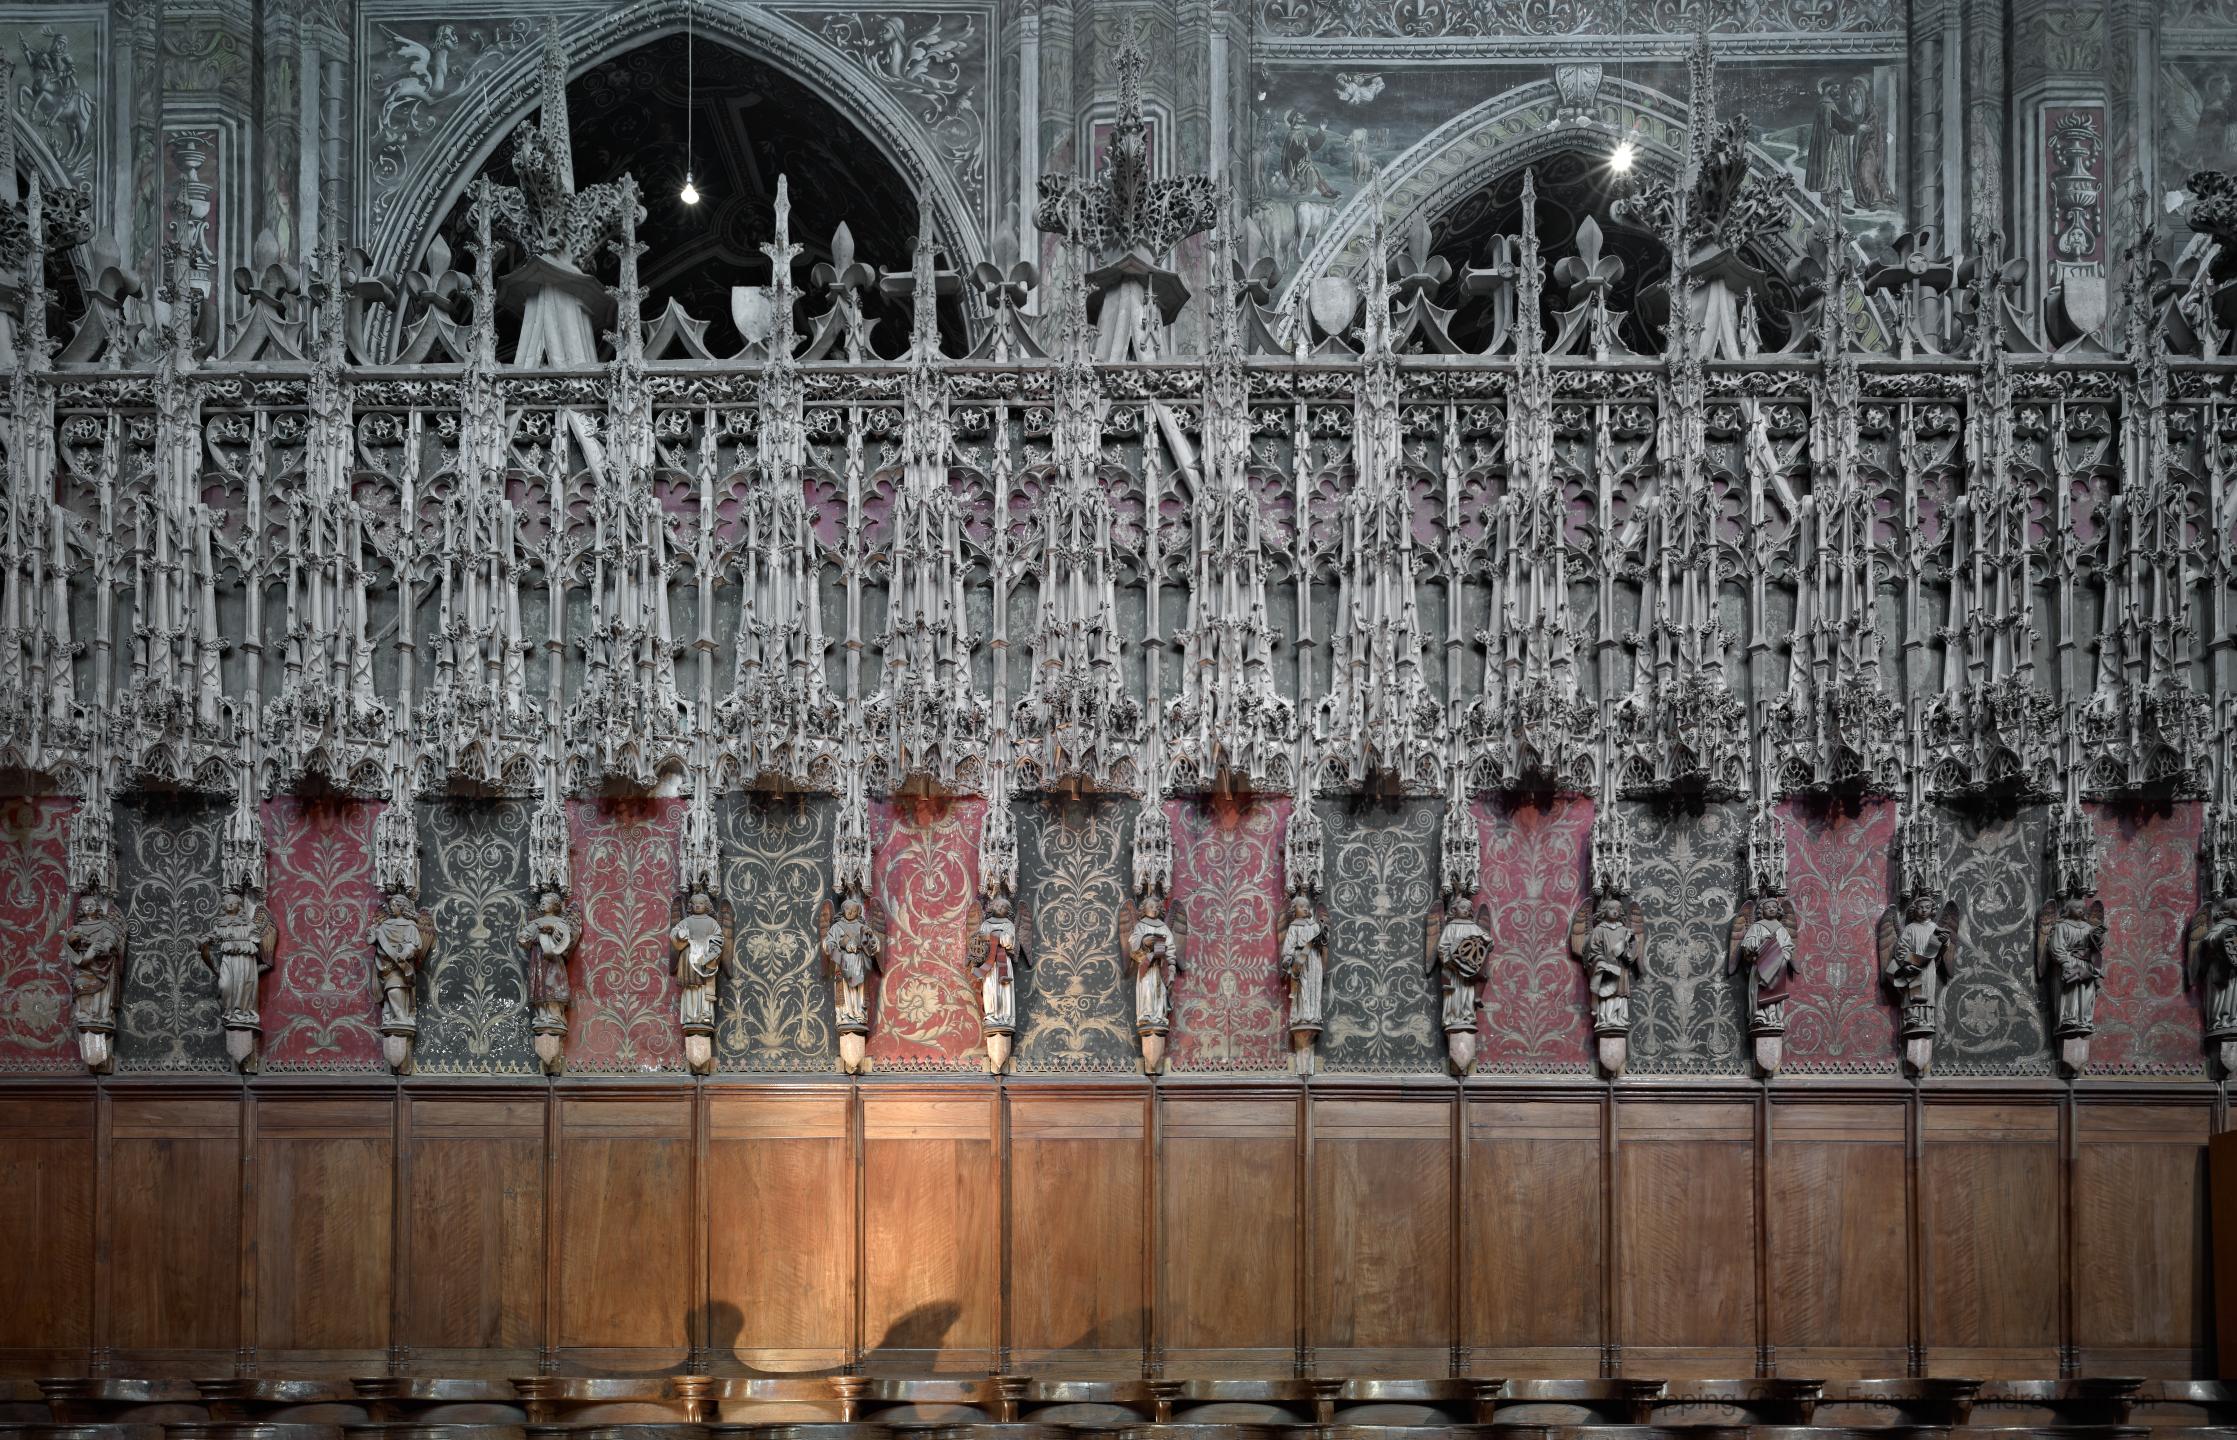 Cathédrale Sainte-Cécile d'Albi - Interior, chevet, south choir stalls